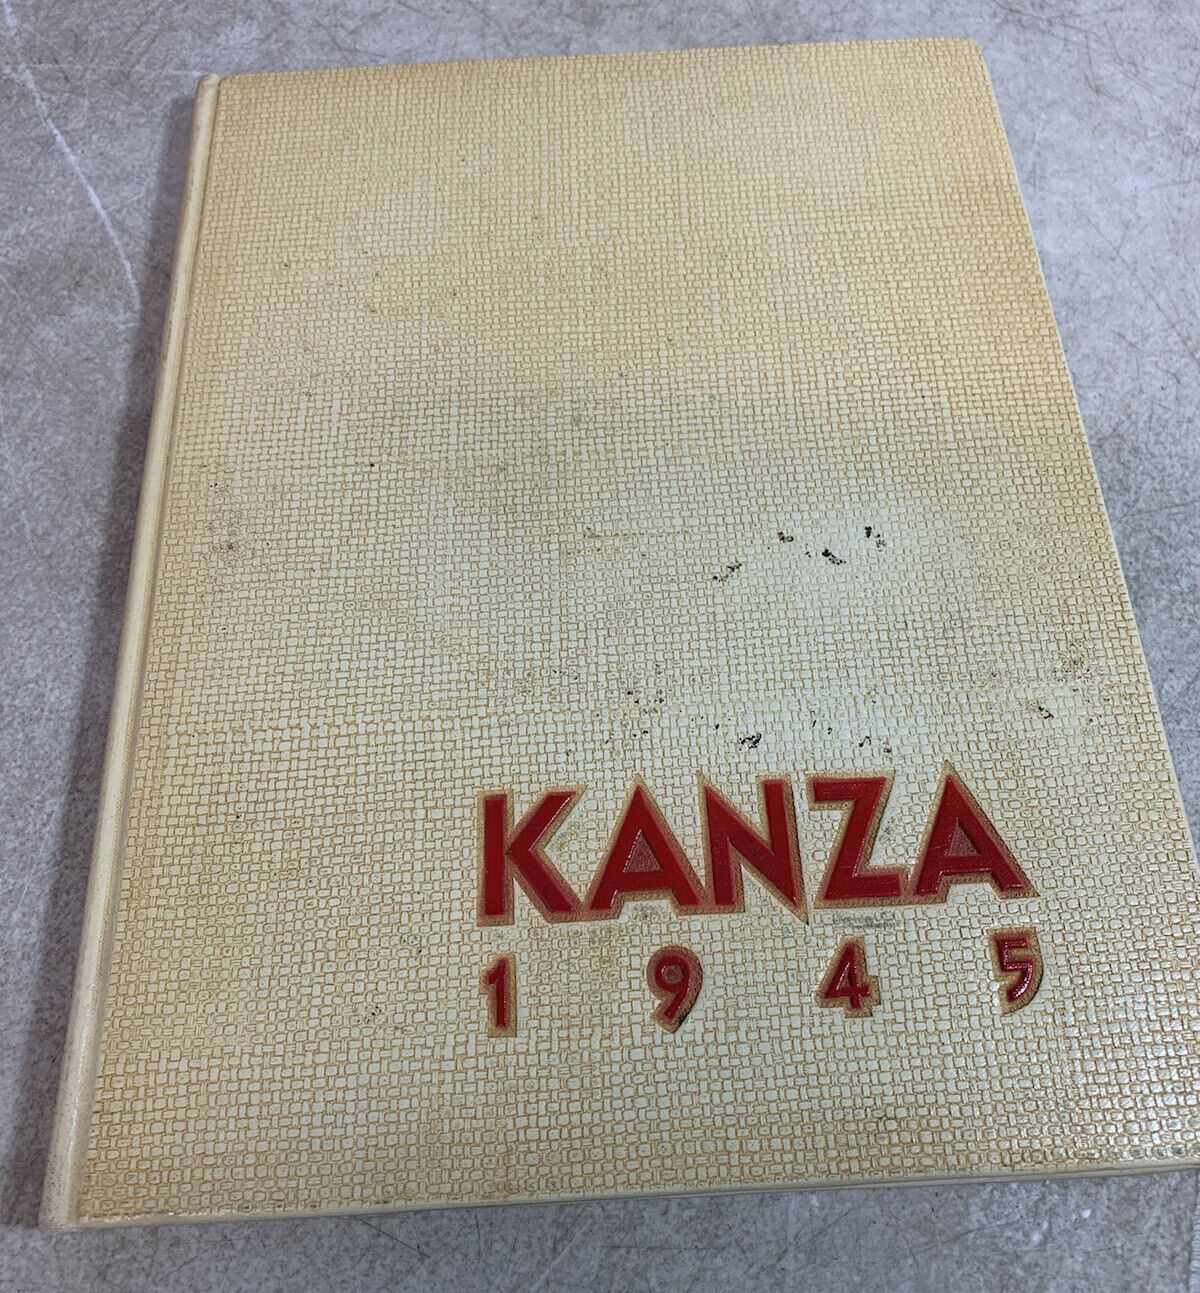 kanza yearbook kansas state teacher’s college 1945